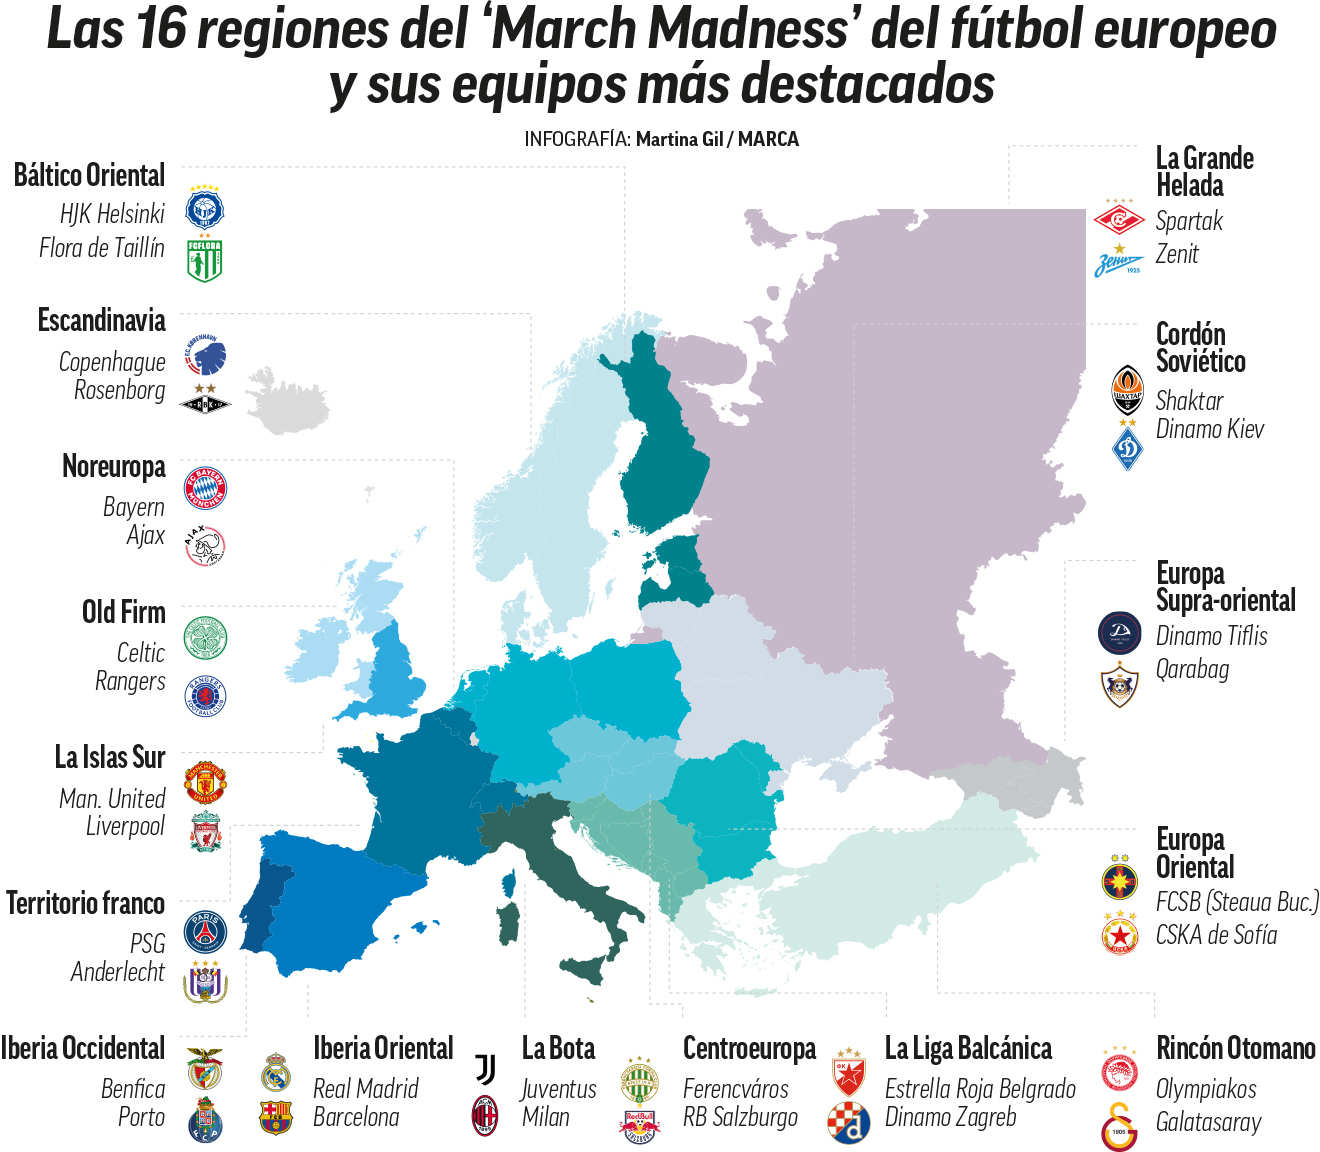 El March Madness del ftbol europeo: Madrid y Bara, en la Iberia Oriental